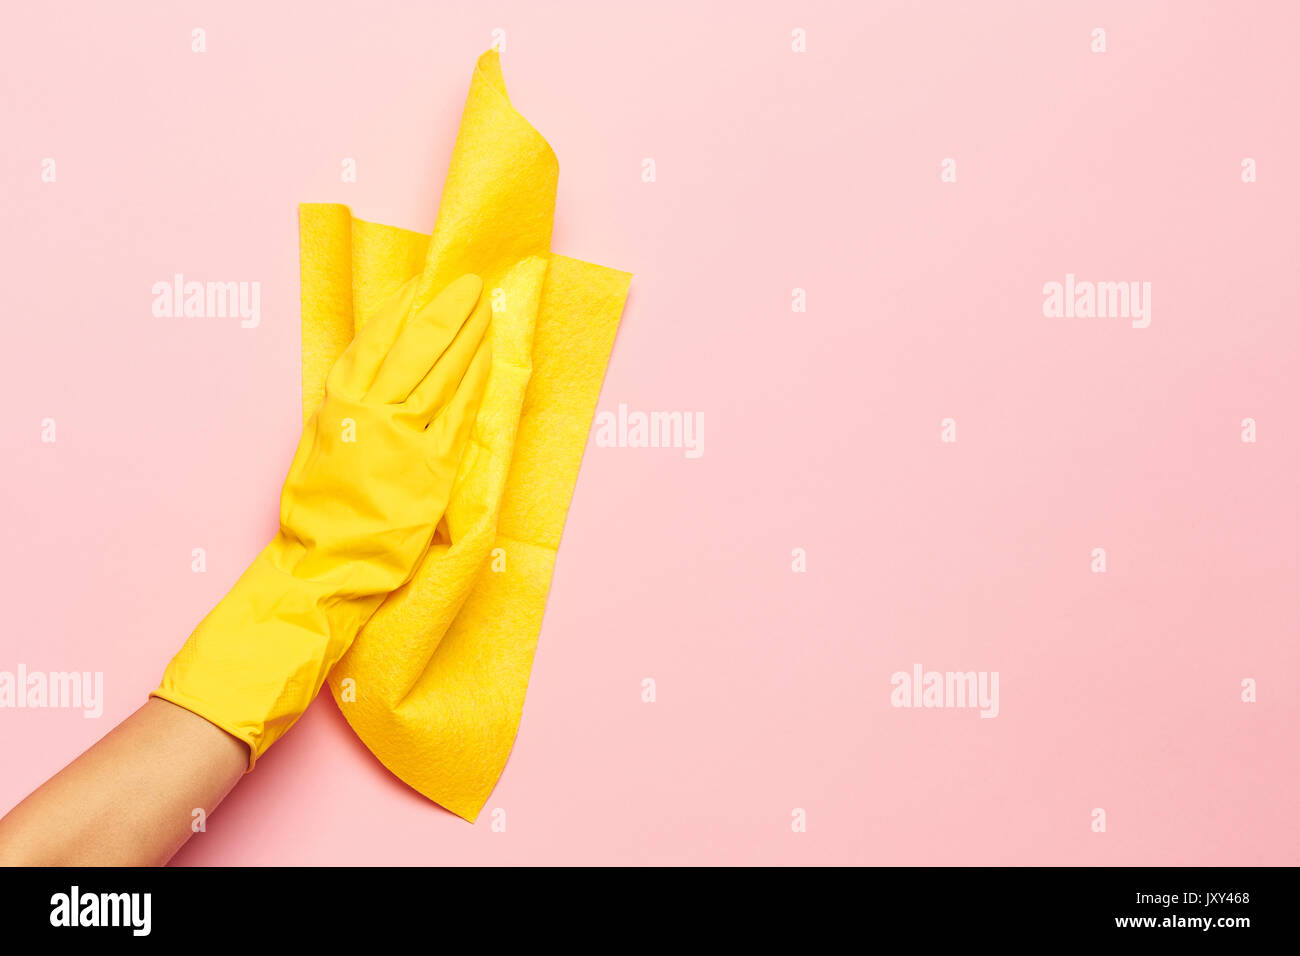 La limpieza de las manos de la mujer sobre un fondo de color rosa. La limpieza o el concepto de limpieza Foto de stock